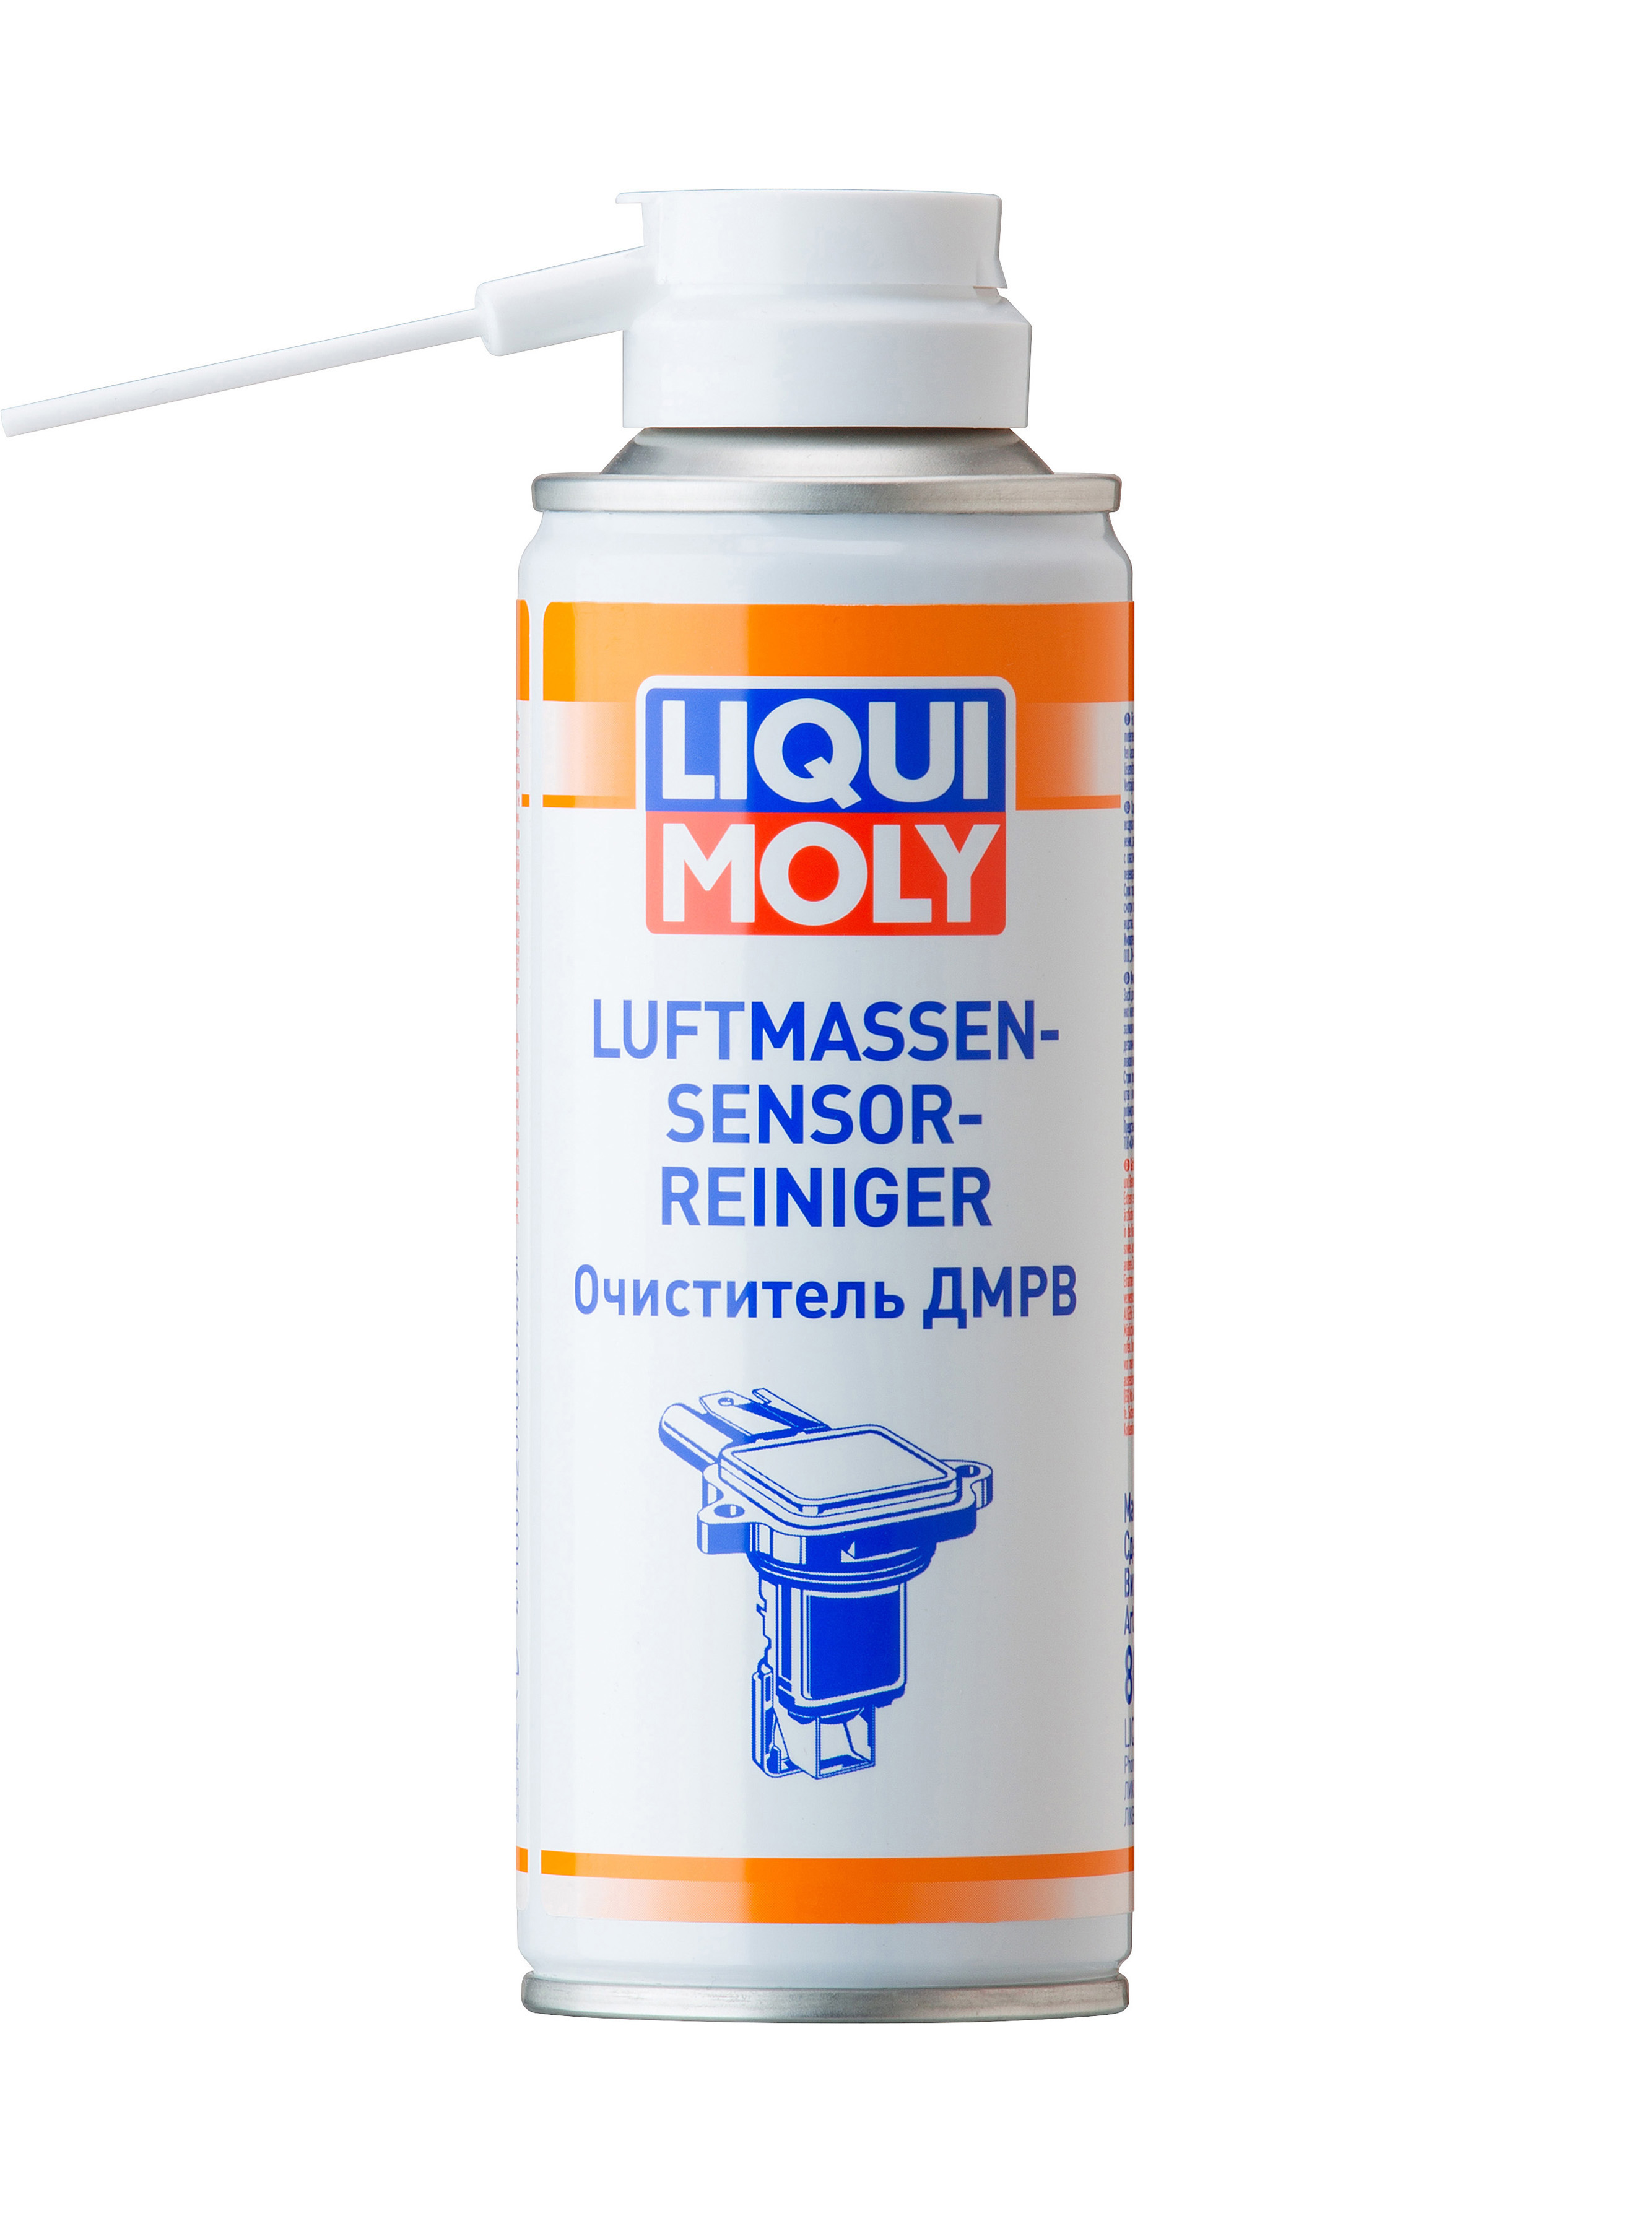 Очиститель ДМРВ LIQUI MOLY Luftmassensensor-Reiniger (0,2 литра)